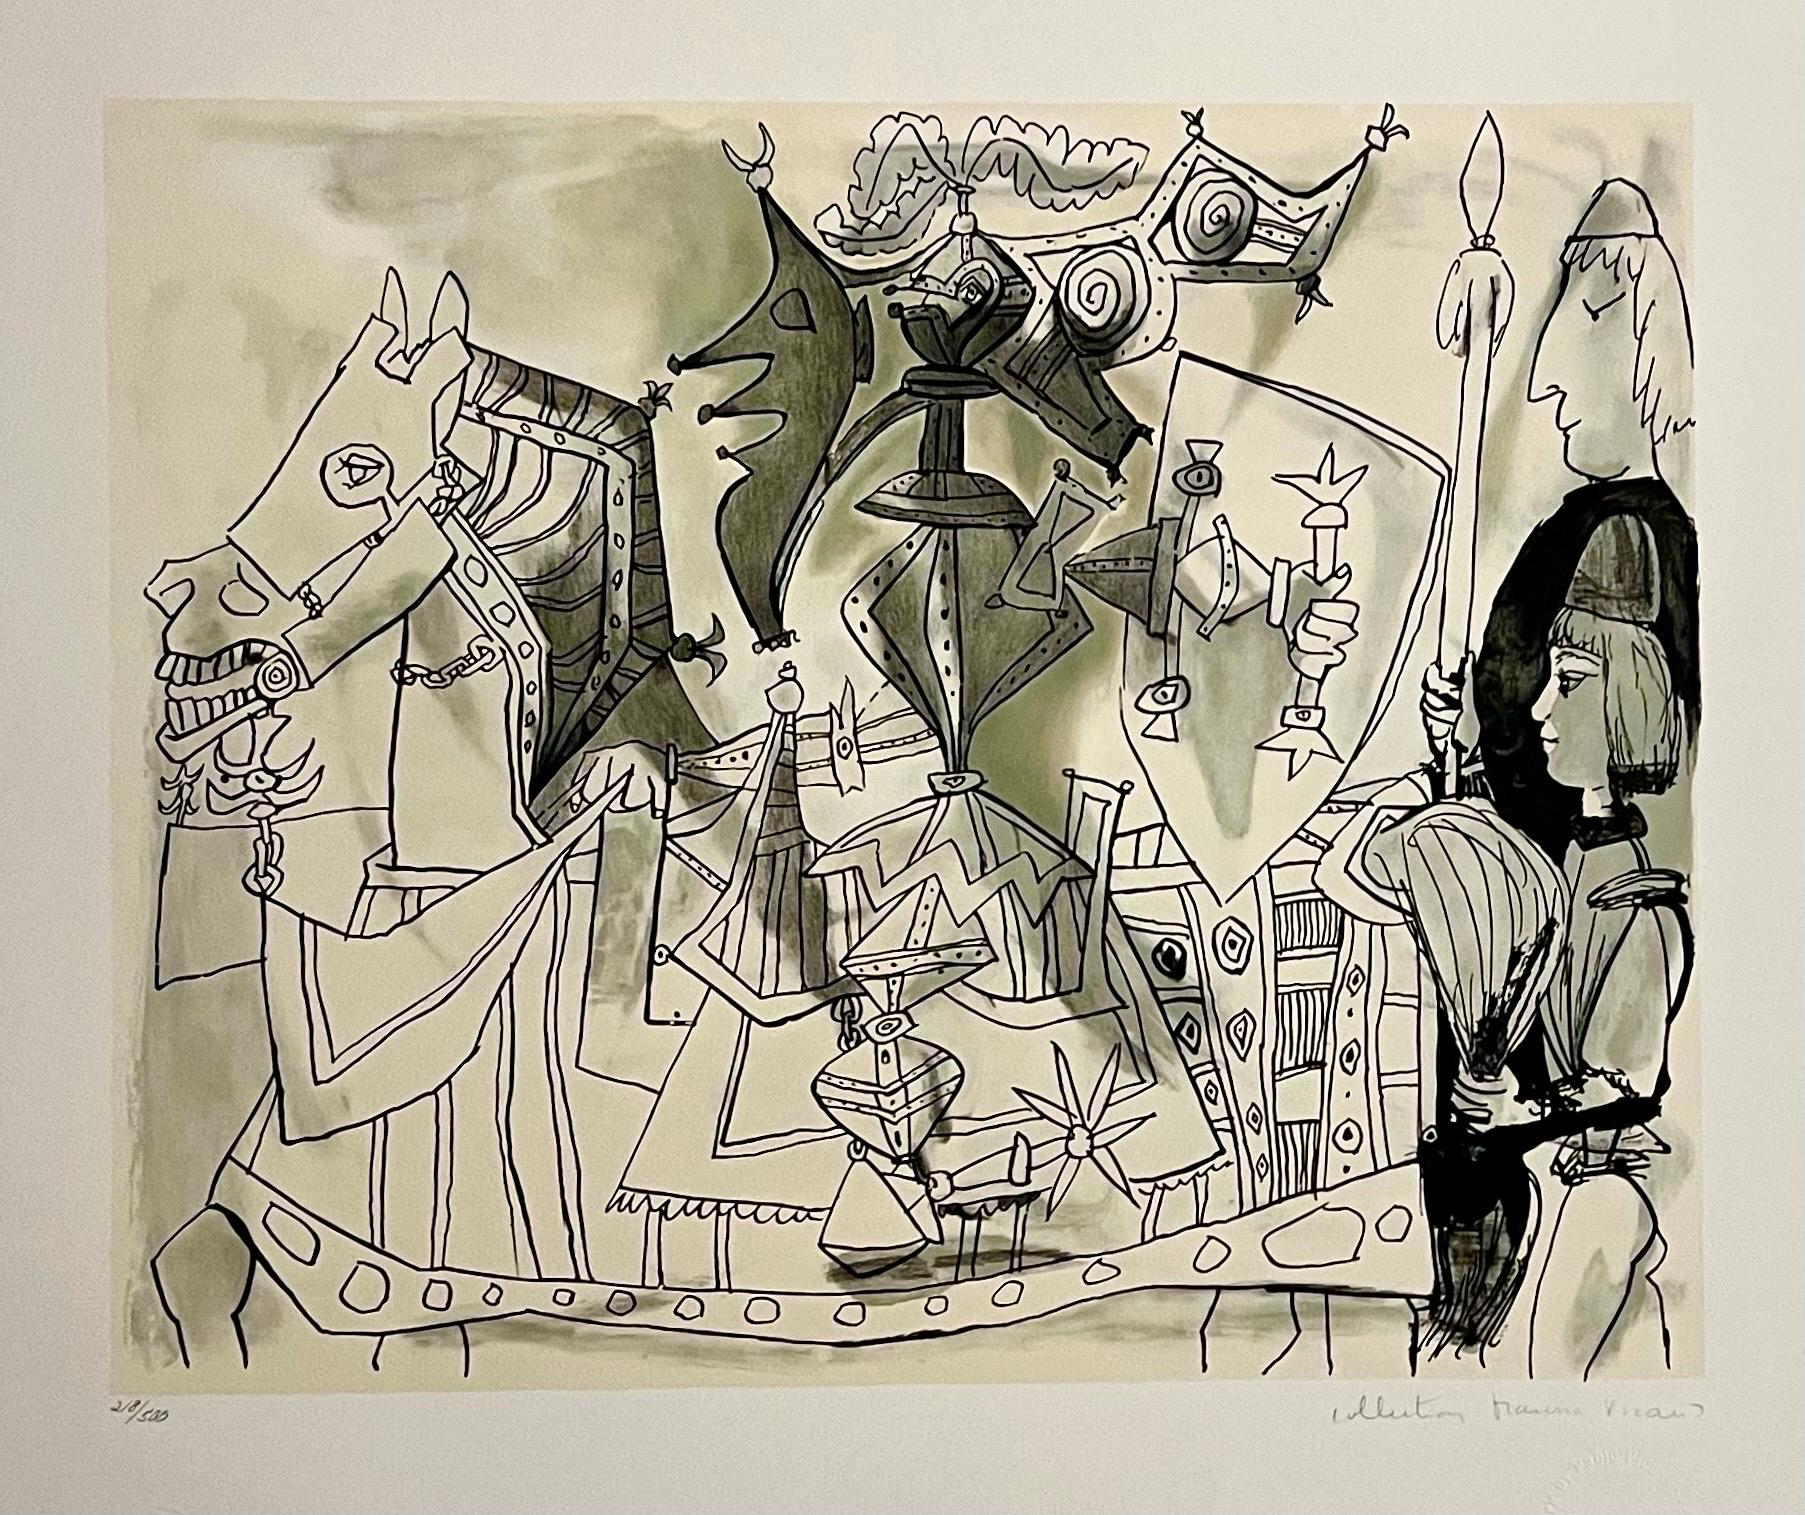 Abstract Print (after) Pablo Picasso - Lithographie cubiste abstraite signée à la main représentant un cheval, une armure et un cheval, Pablo Picasso